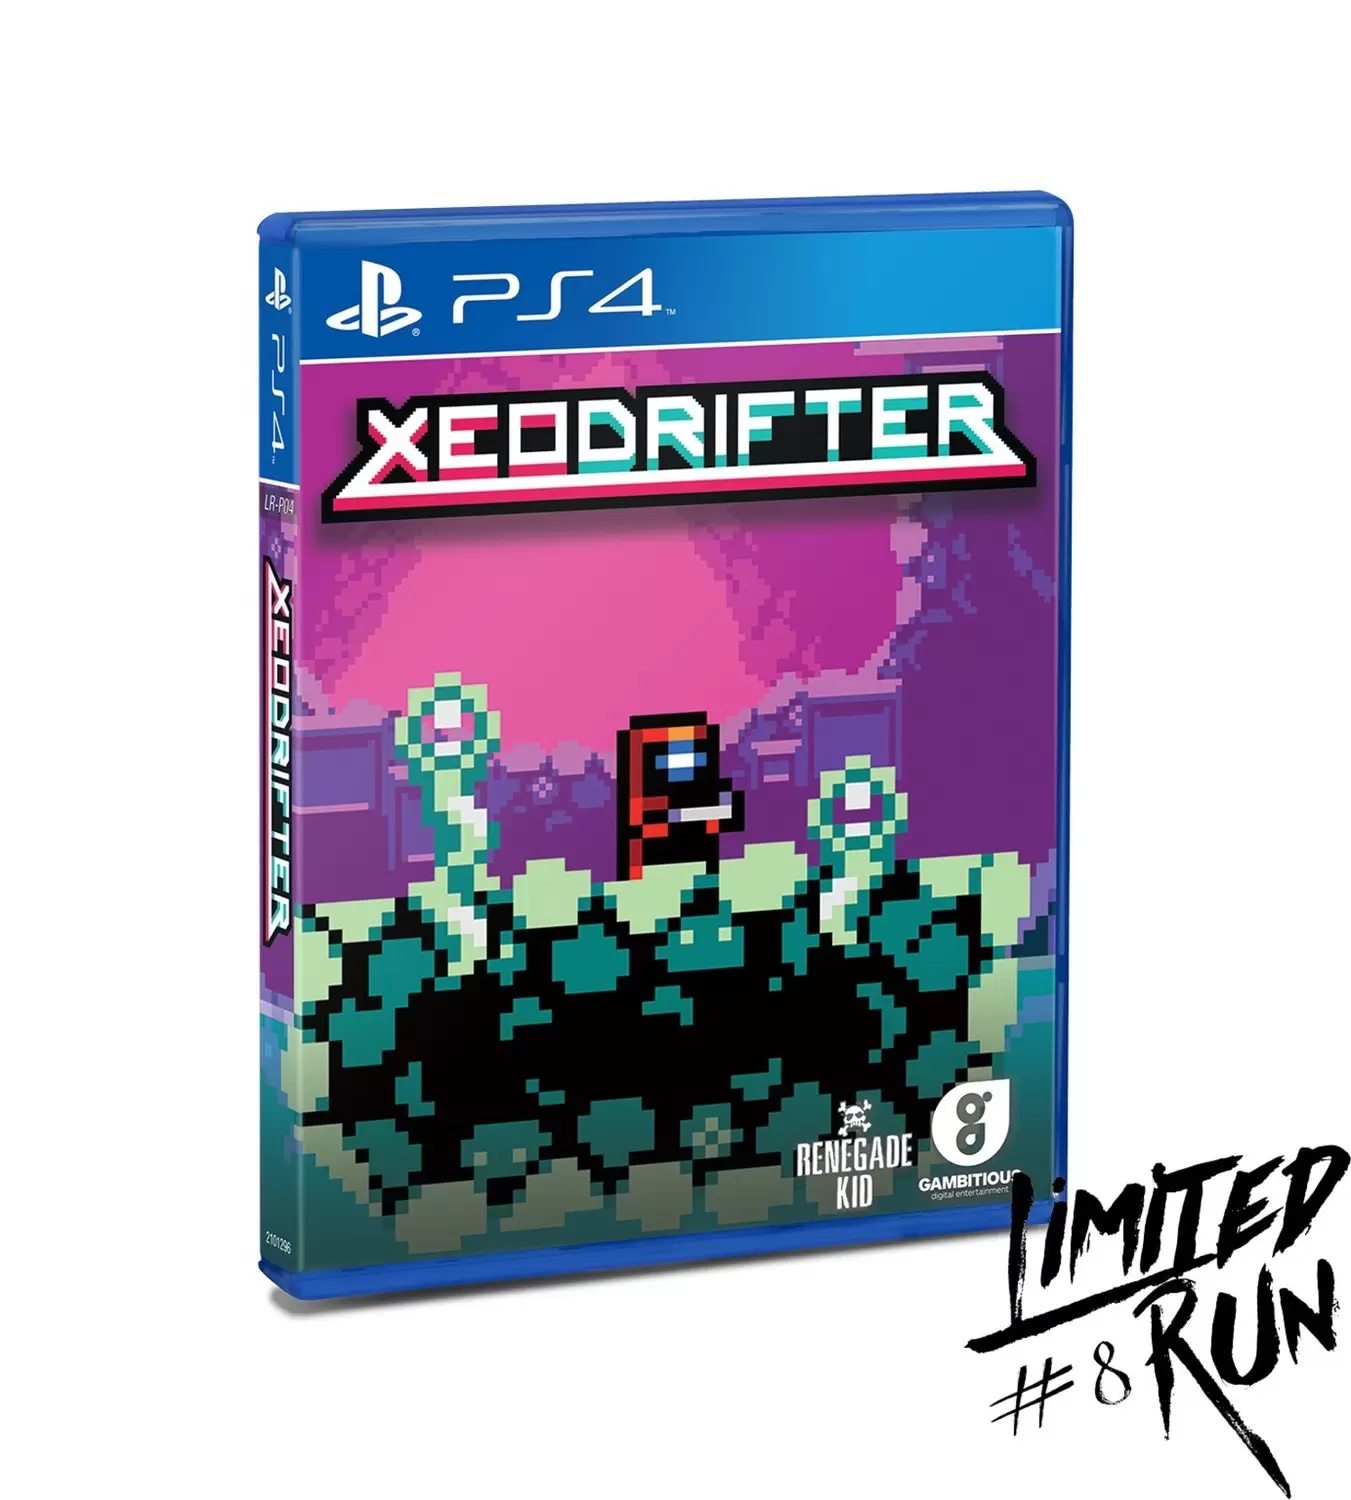 PS4 Games - Xeodrifter